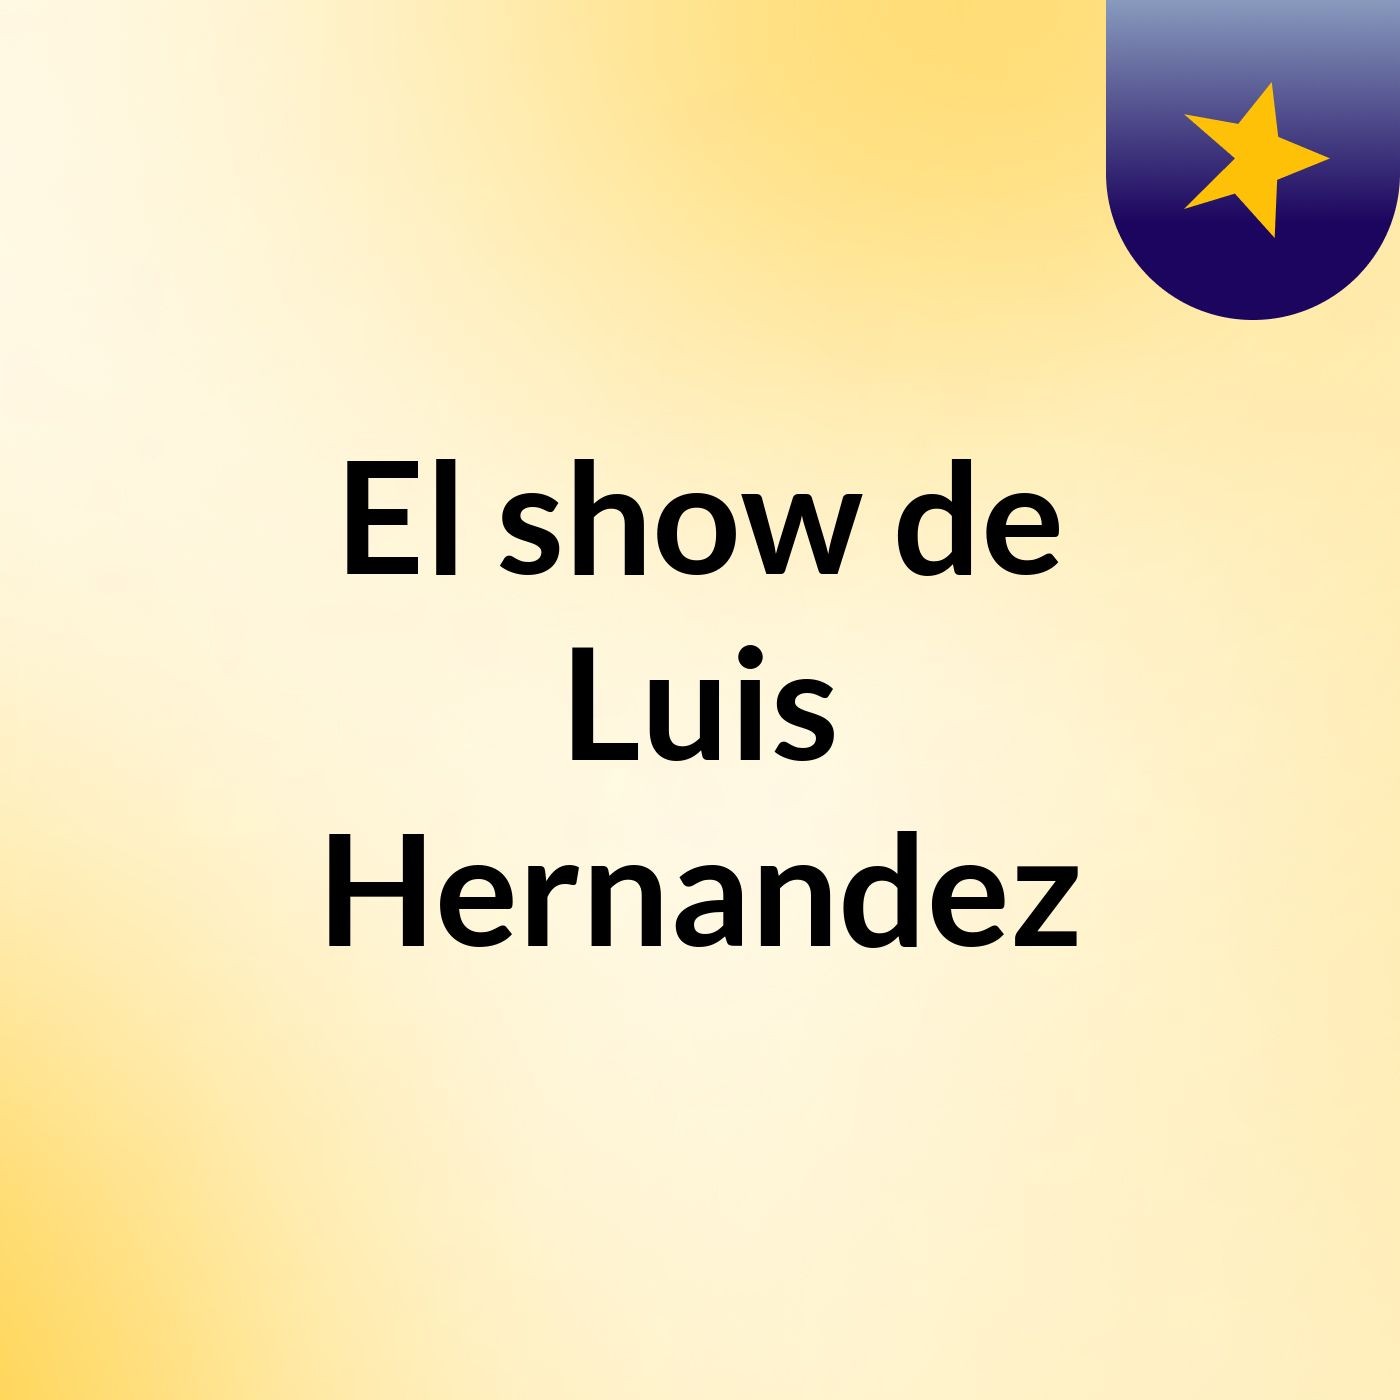 El show de Luis Hernandez